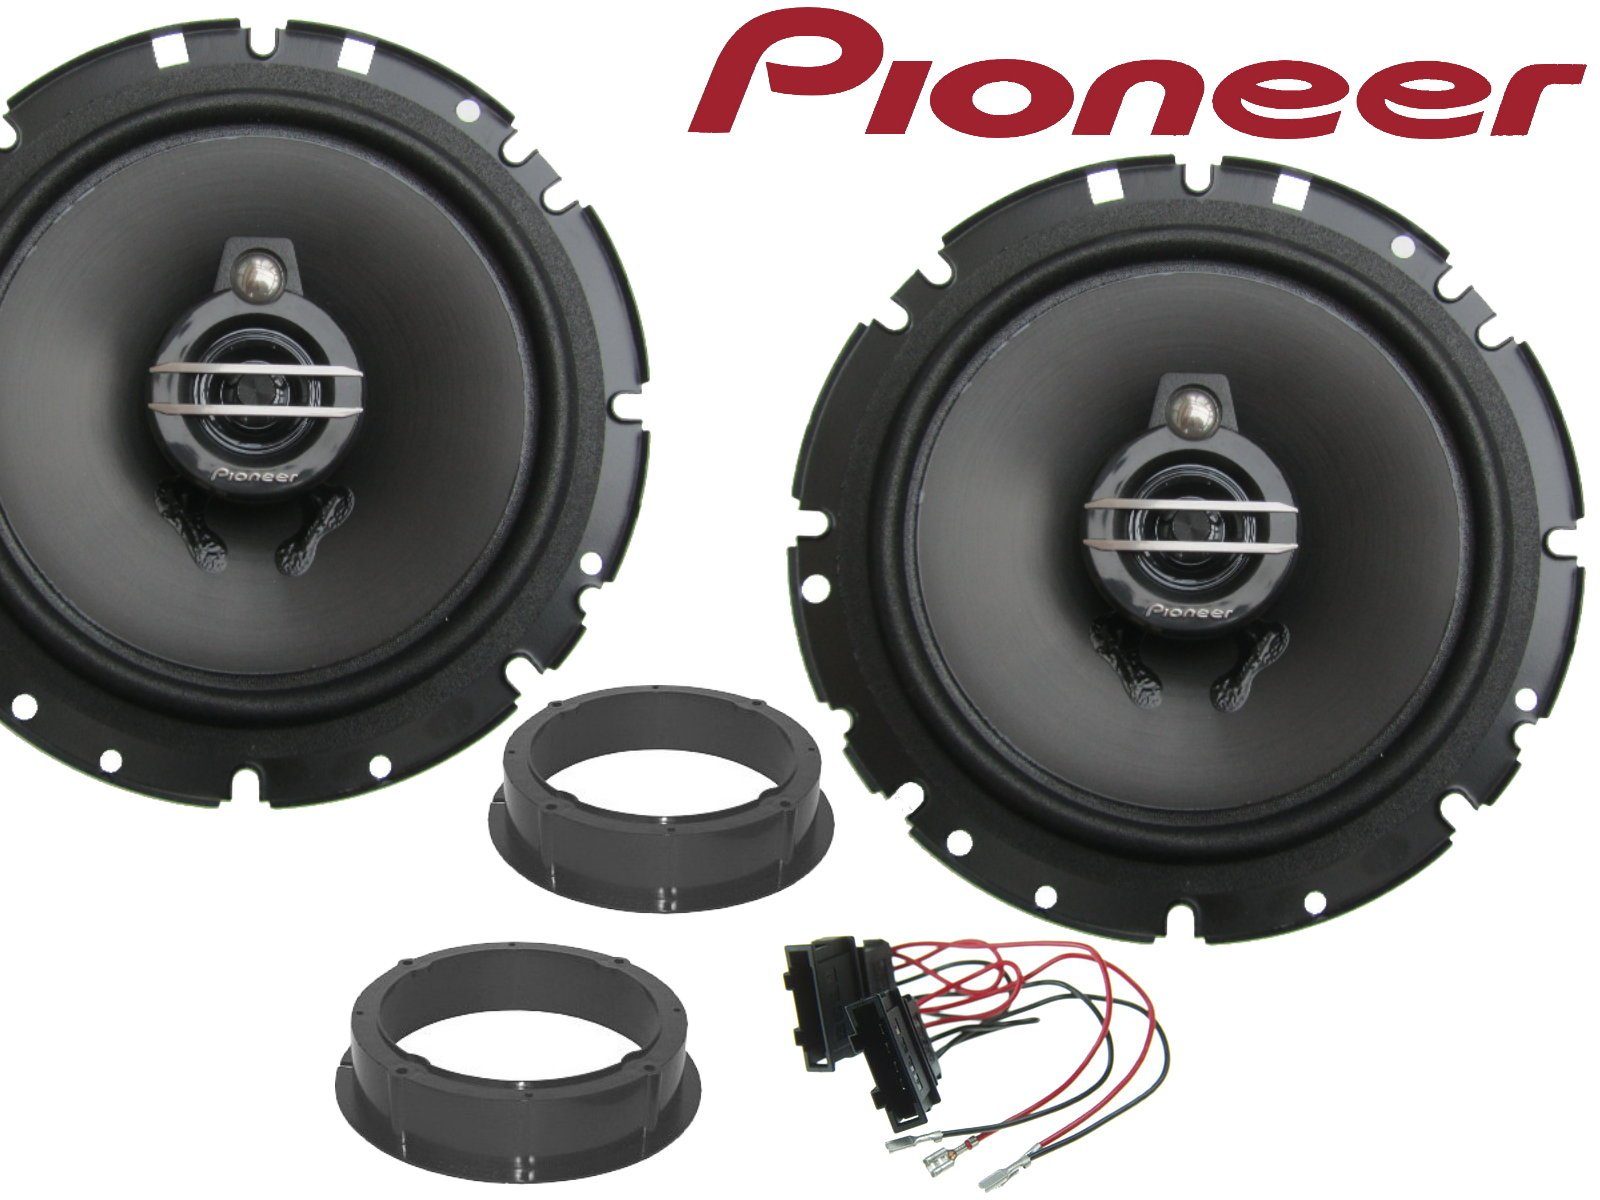 DSX Pioneer 3wege passend für VW Passat B5 3B 3BG Laut Auto-Lautsprecher (40 W)